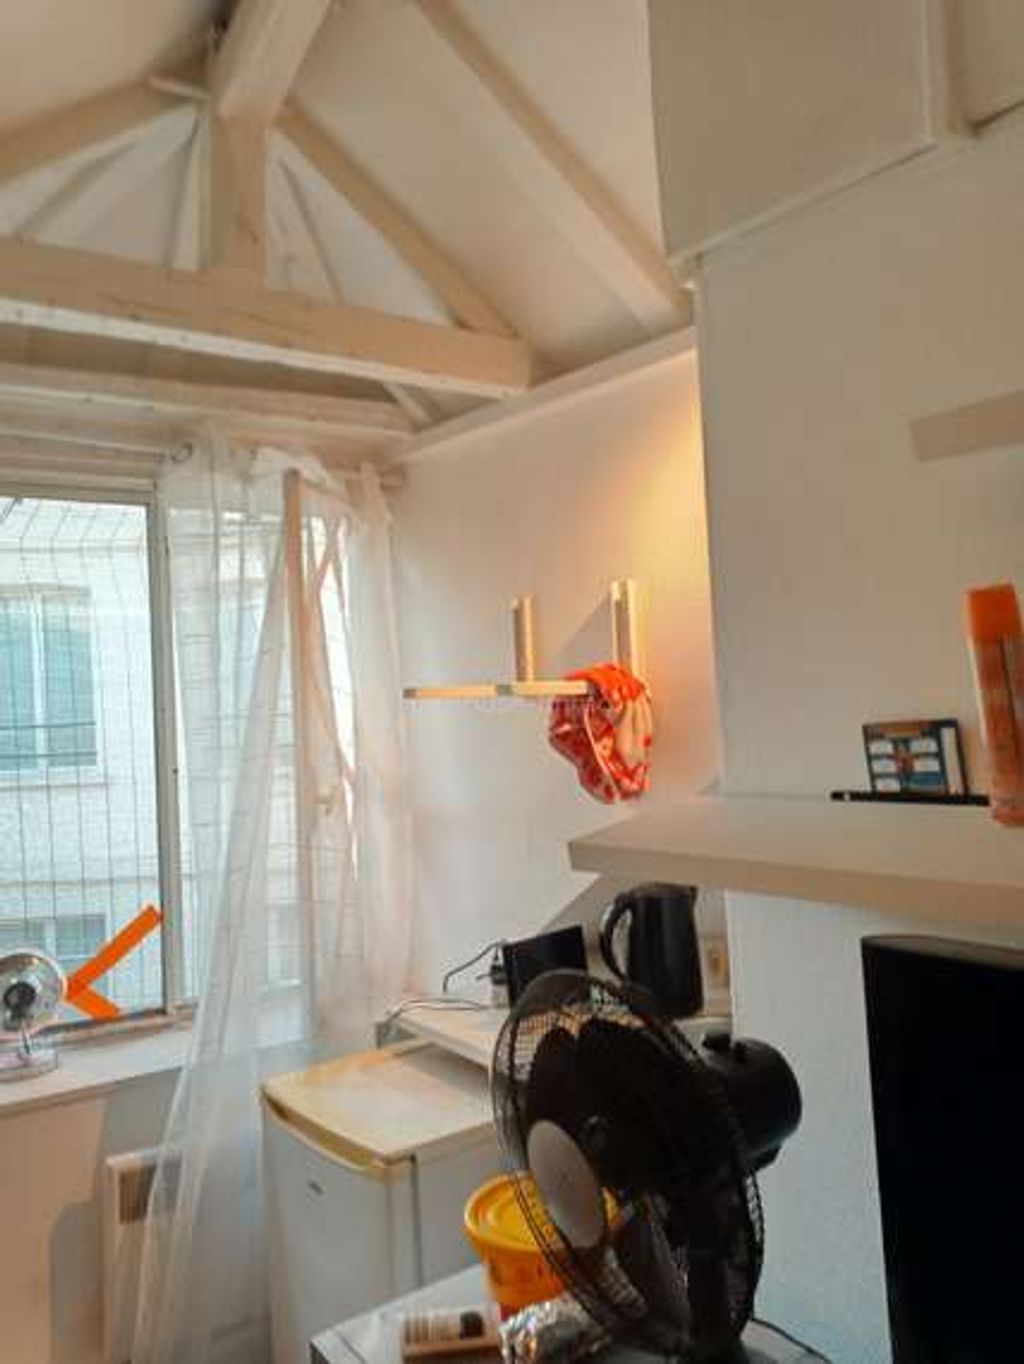 Achat studio à vendre 9 m² - Paris 2ème arrondissement